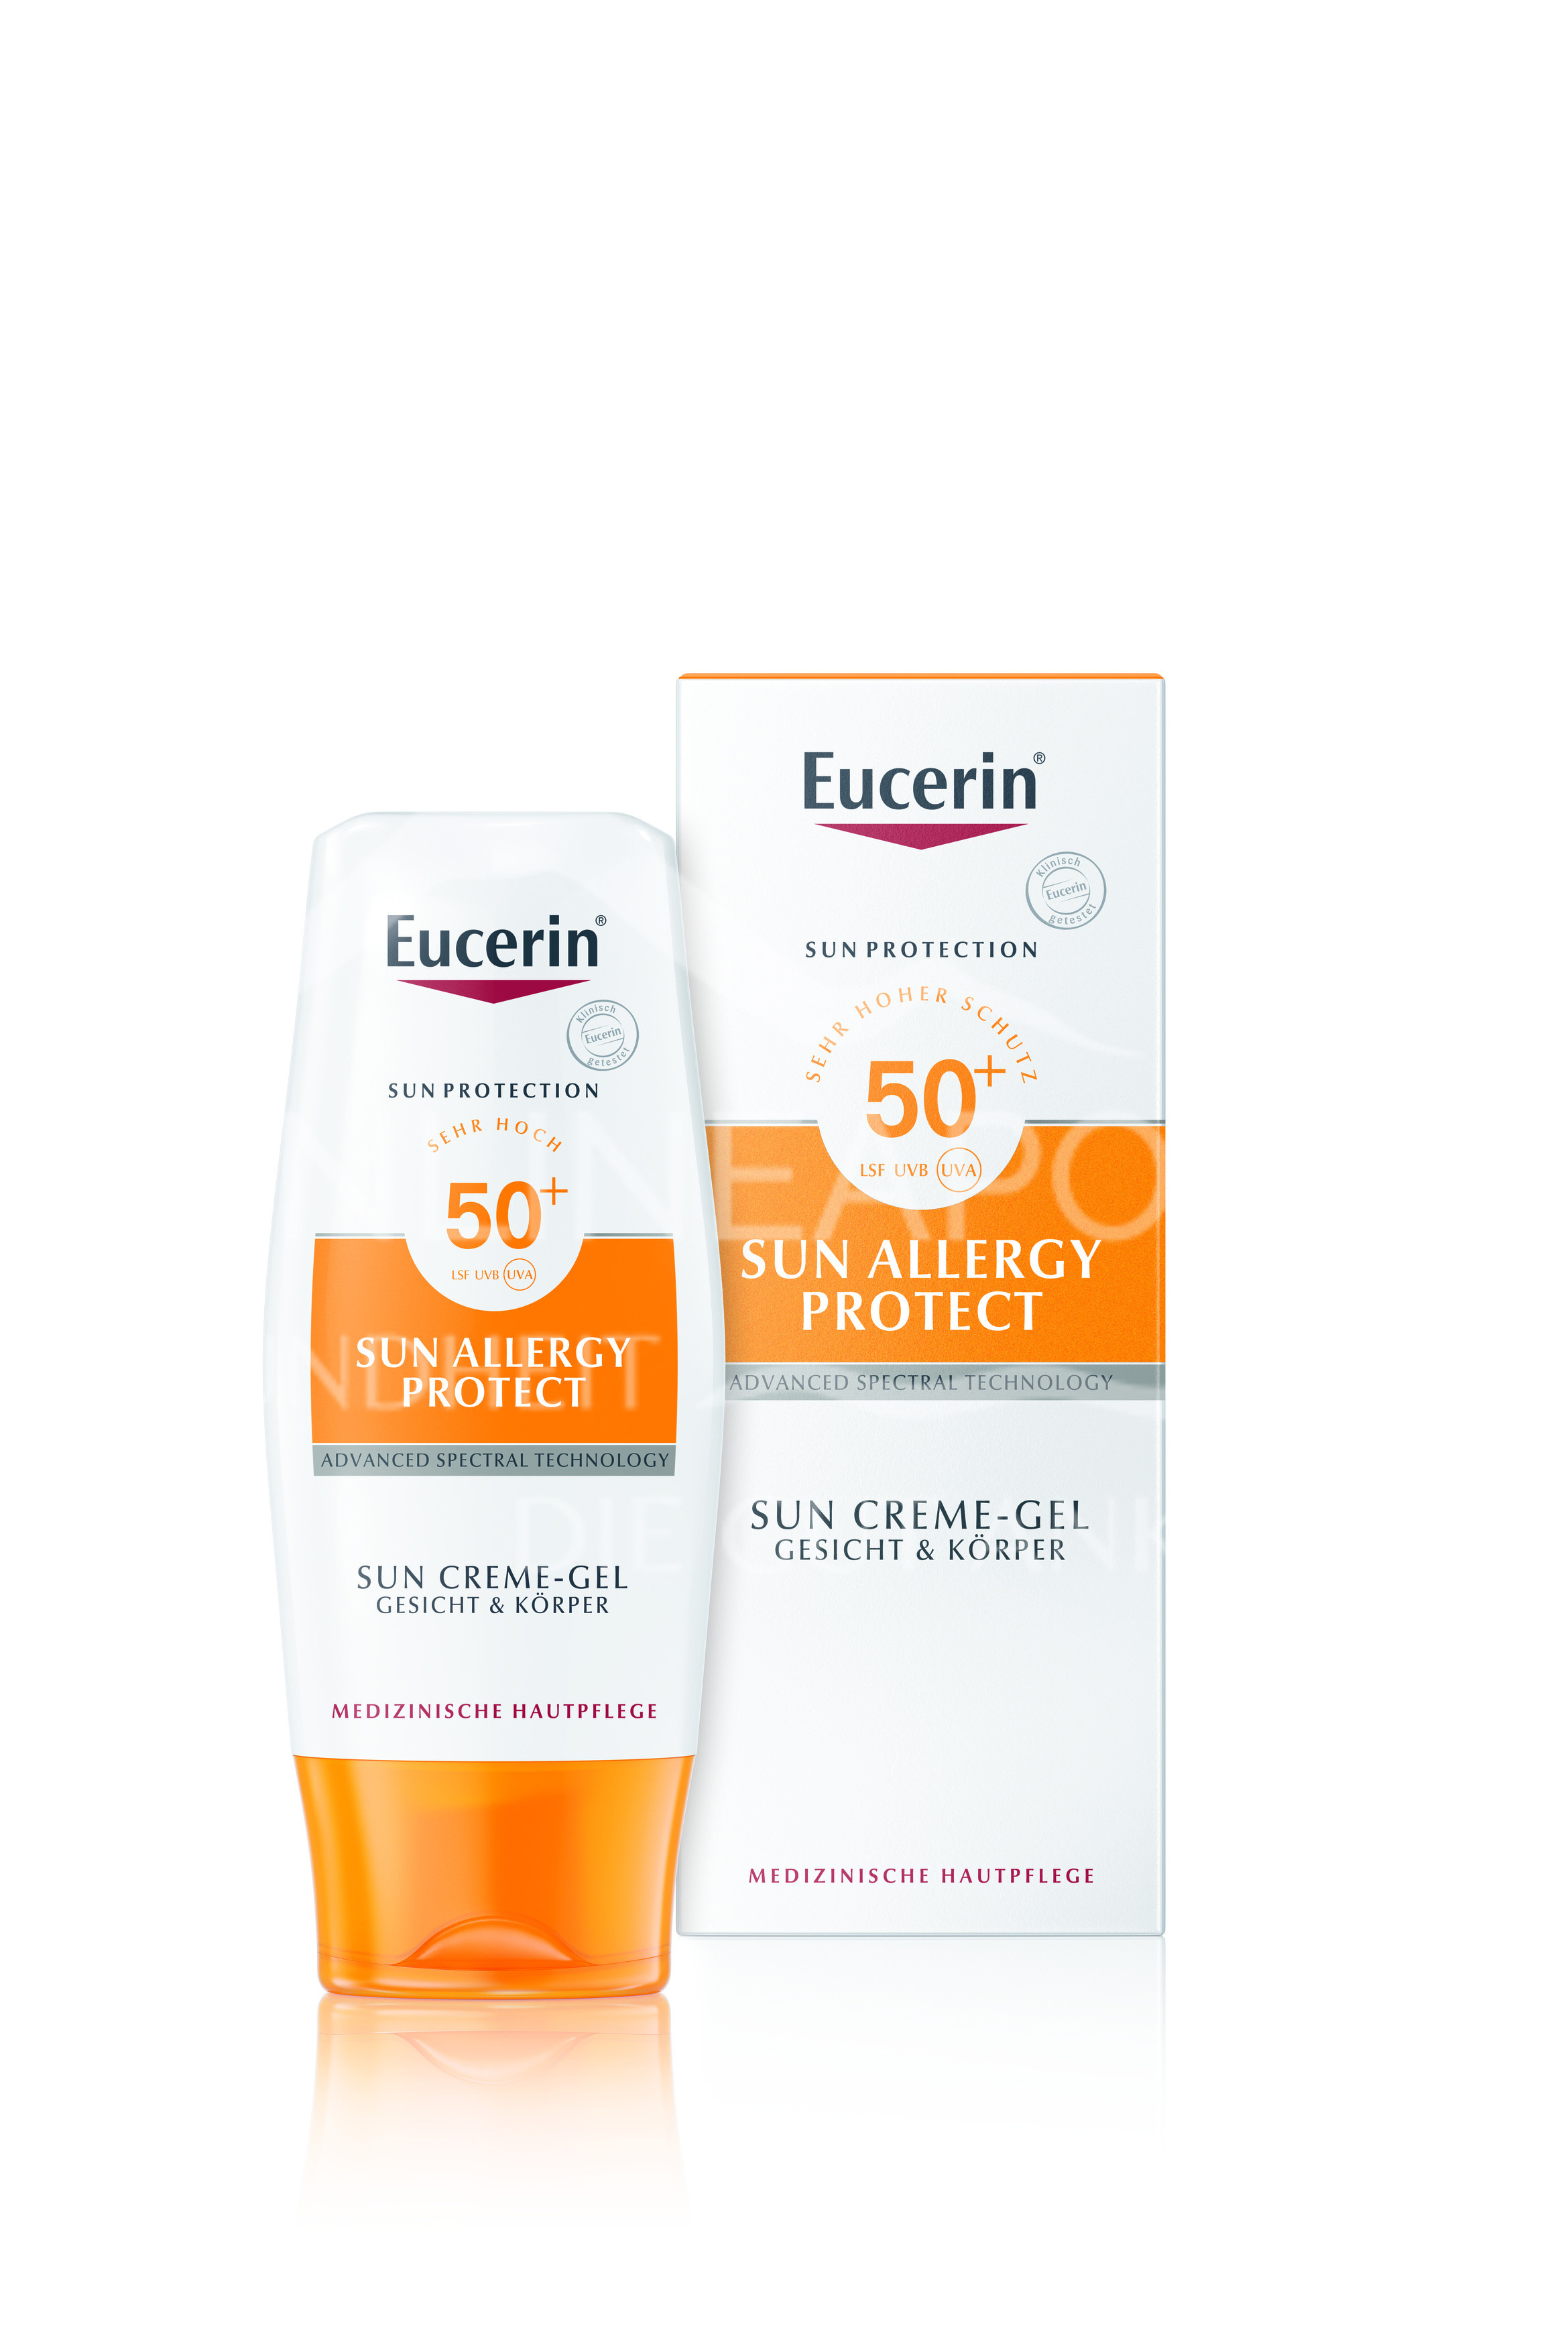 Eucerin® Sonnen Allergie Schutz Sun Creme-Gel LSF 50